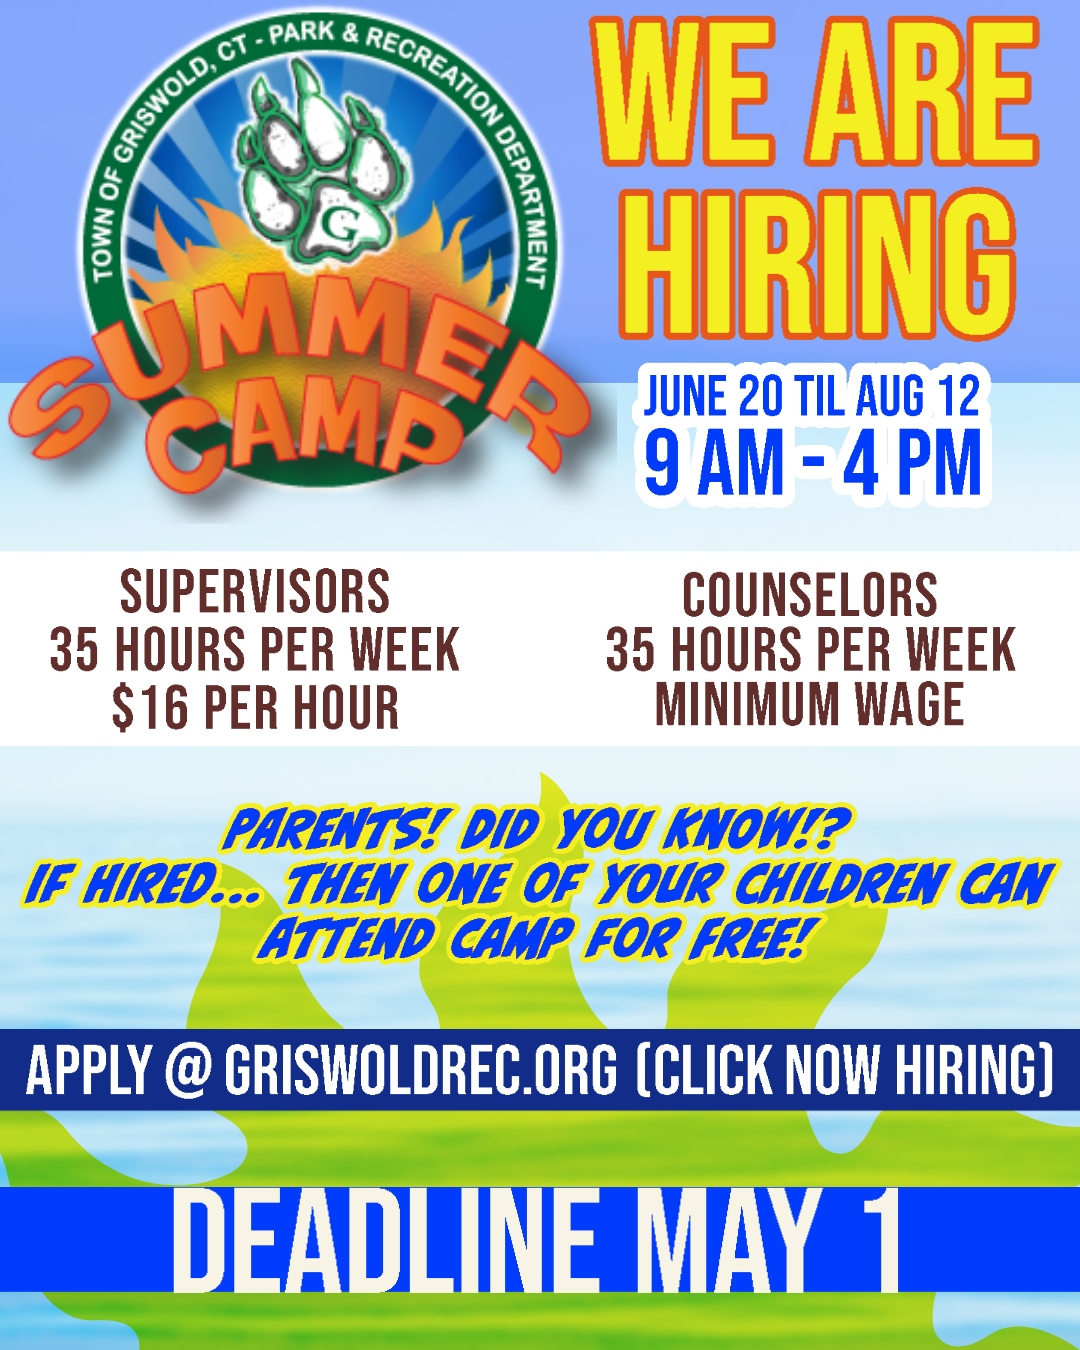 https://0201.nccdn.net/1_2/000/000/13c/c4f/summer-camp-hiring.png